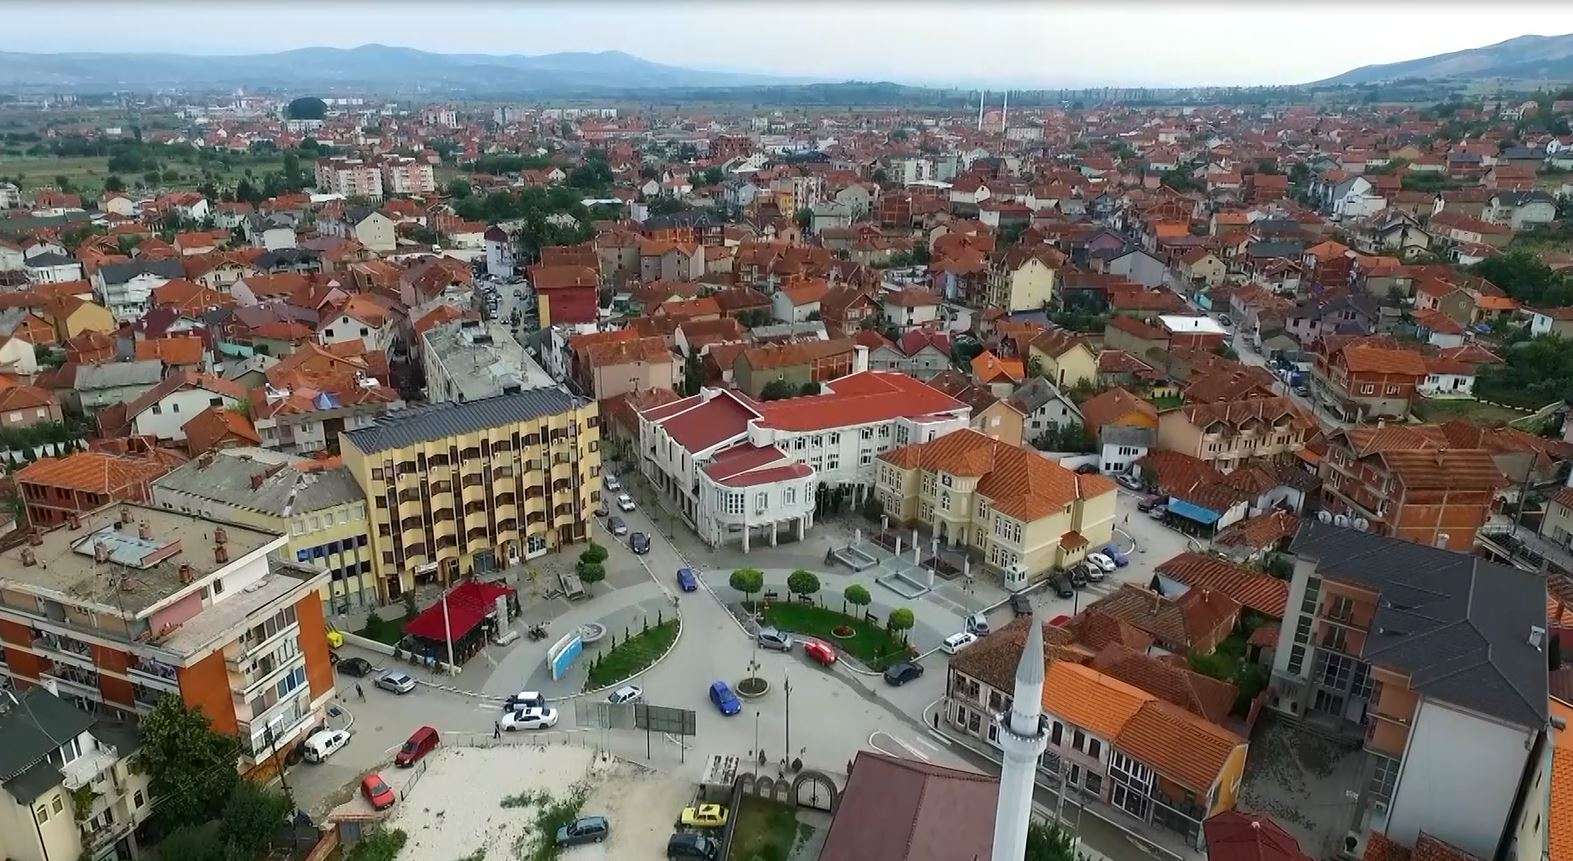 Shqiptarët e Luginës kërkojnë të përfshihen në dialog, theksojnë nevojën e reciprocitetit